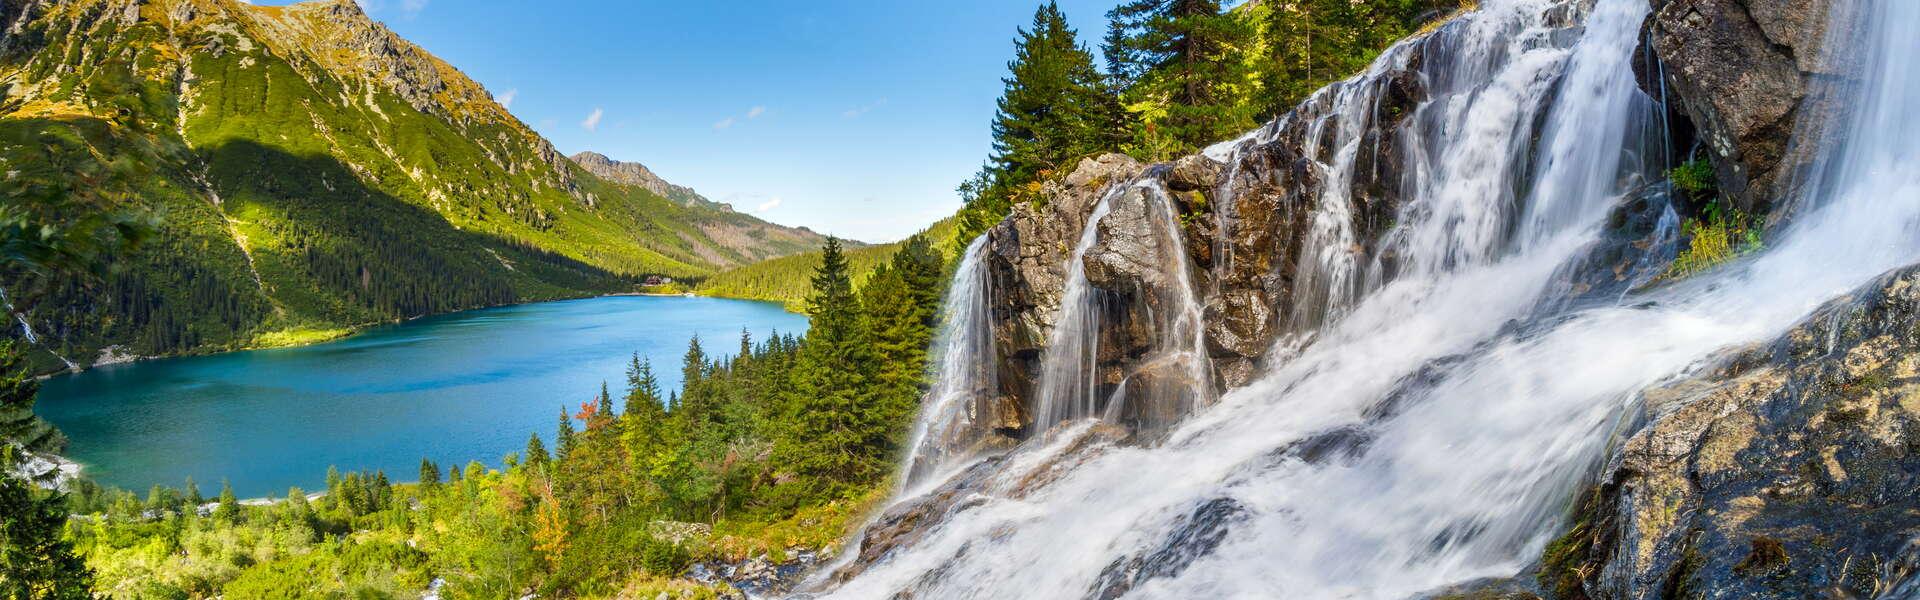 Ein Wasserfall und ein See inmitten hoher Berge